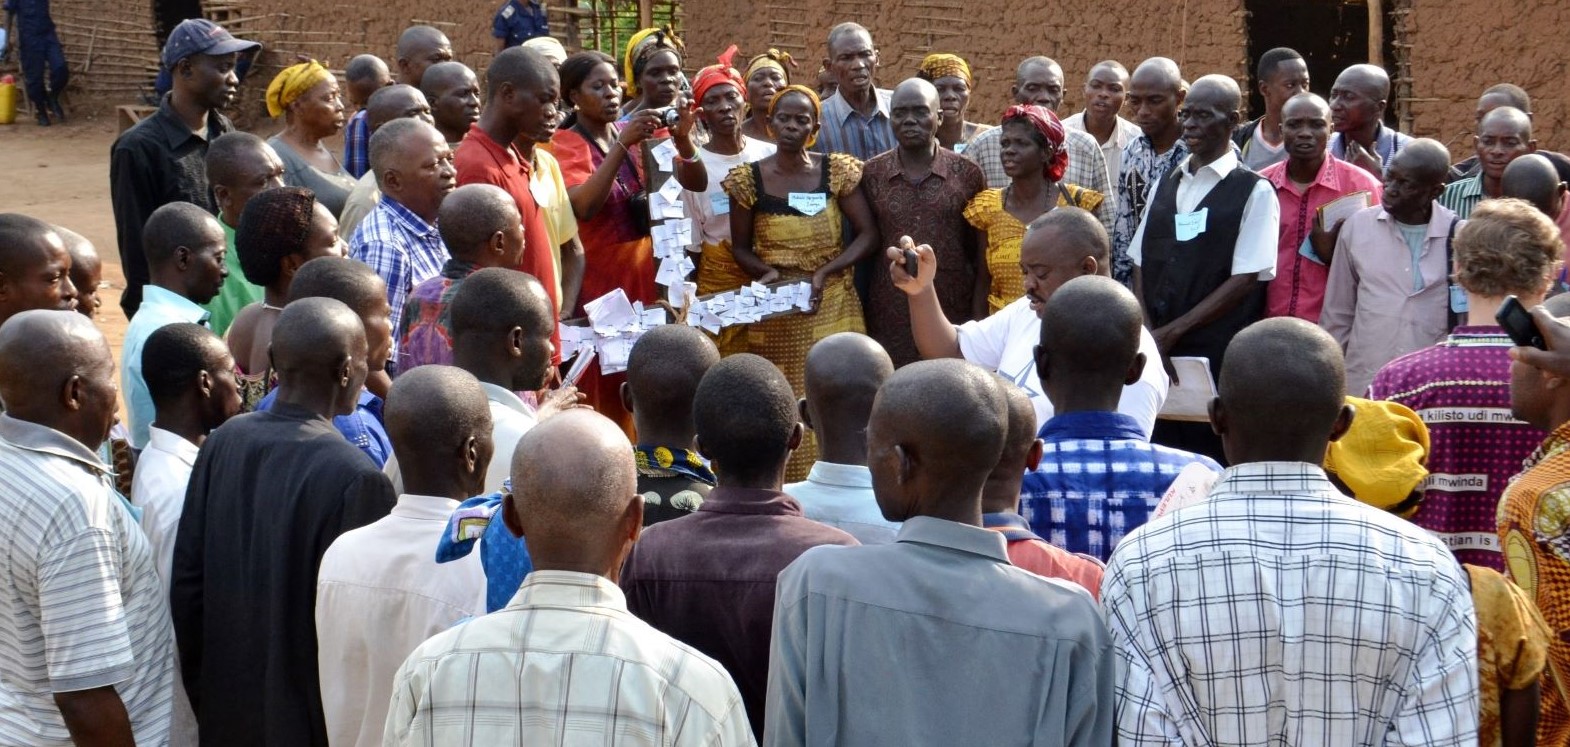 The Cross Workshop in Mueka, Congo.